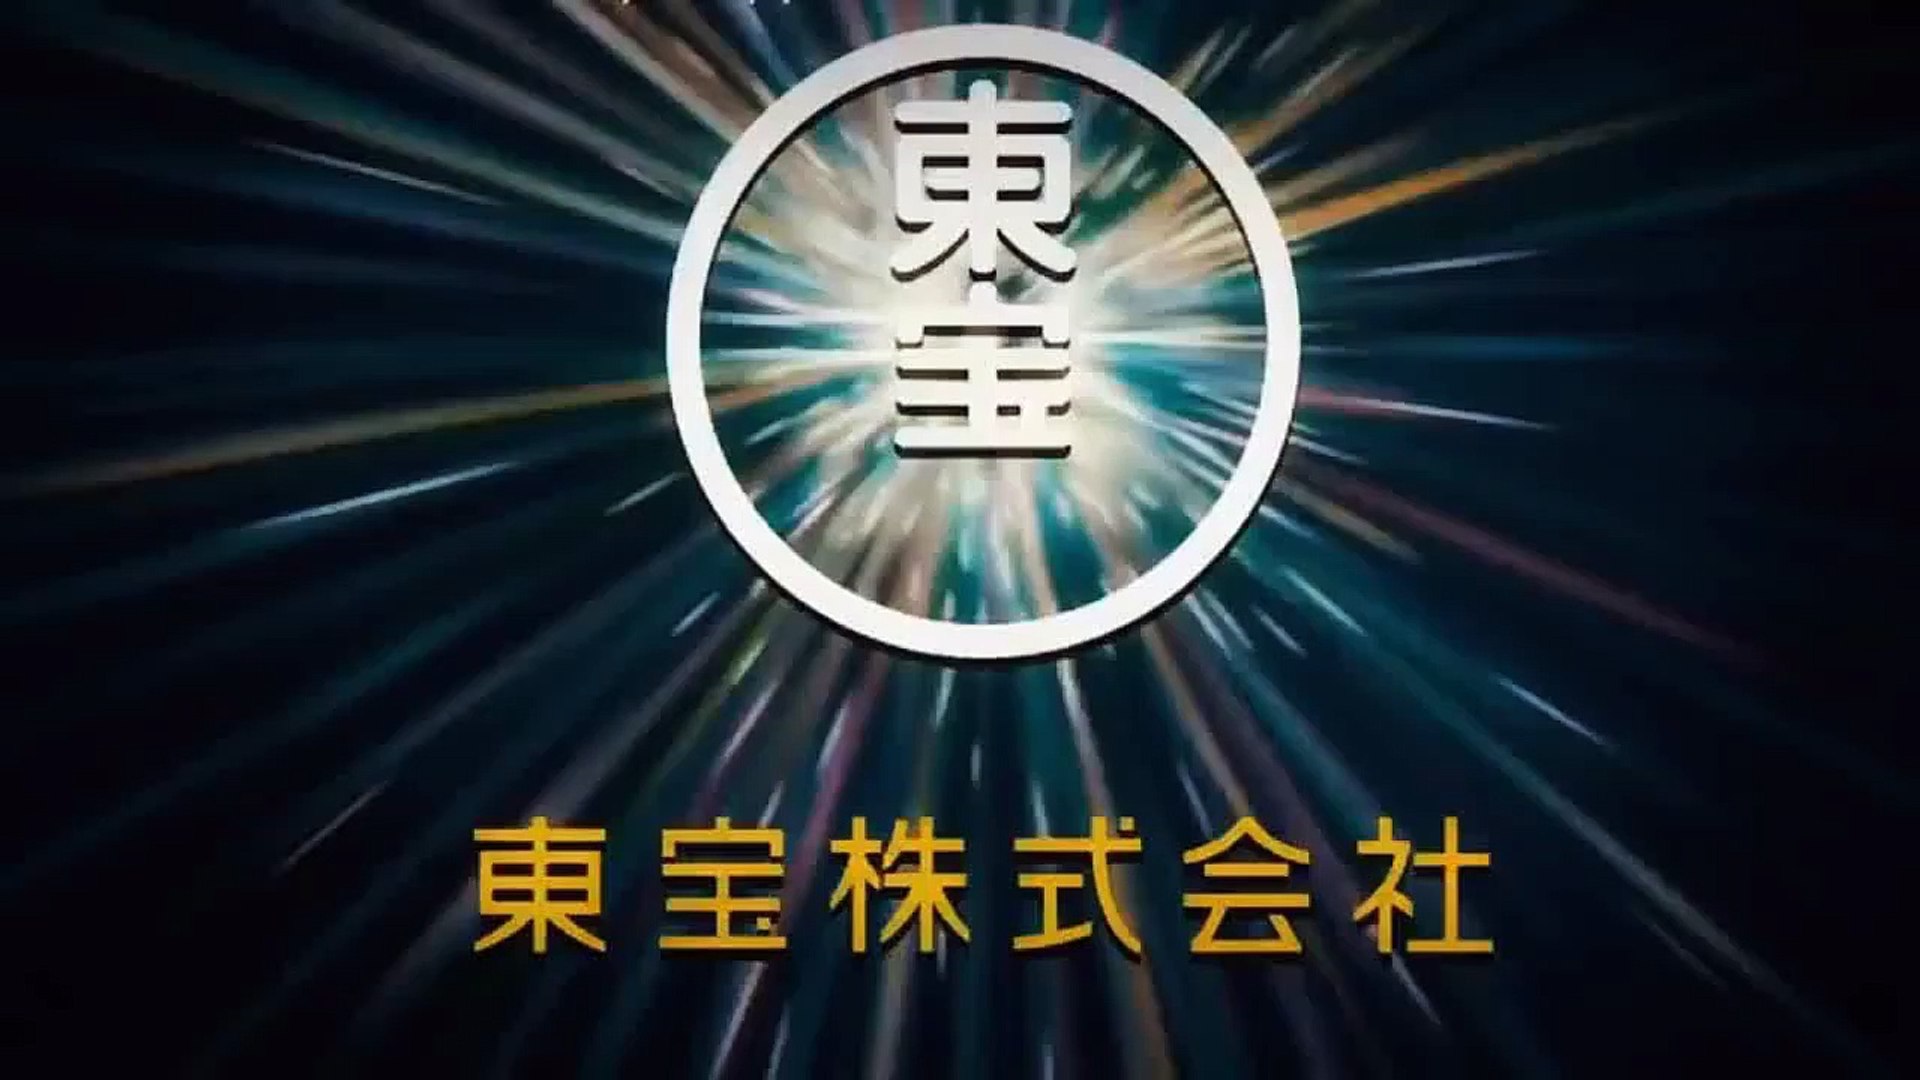 Naruto Shippuuden Filme 6 - Road to Ninja - (Trailer Legendado) 